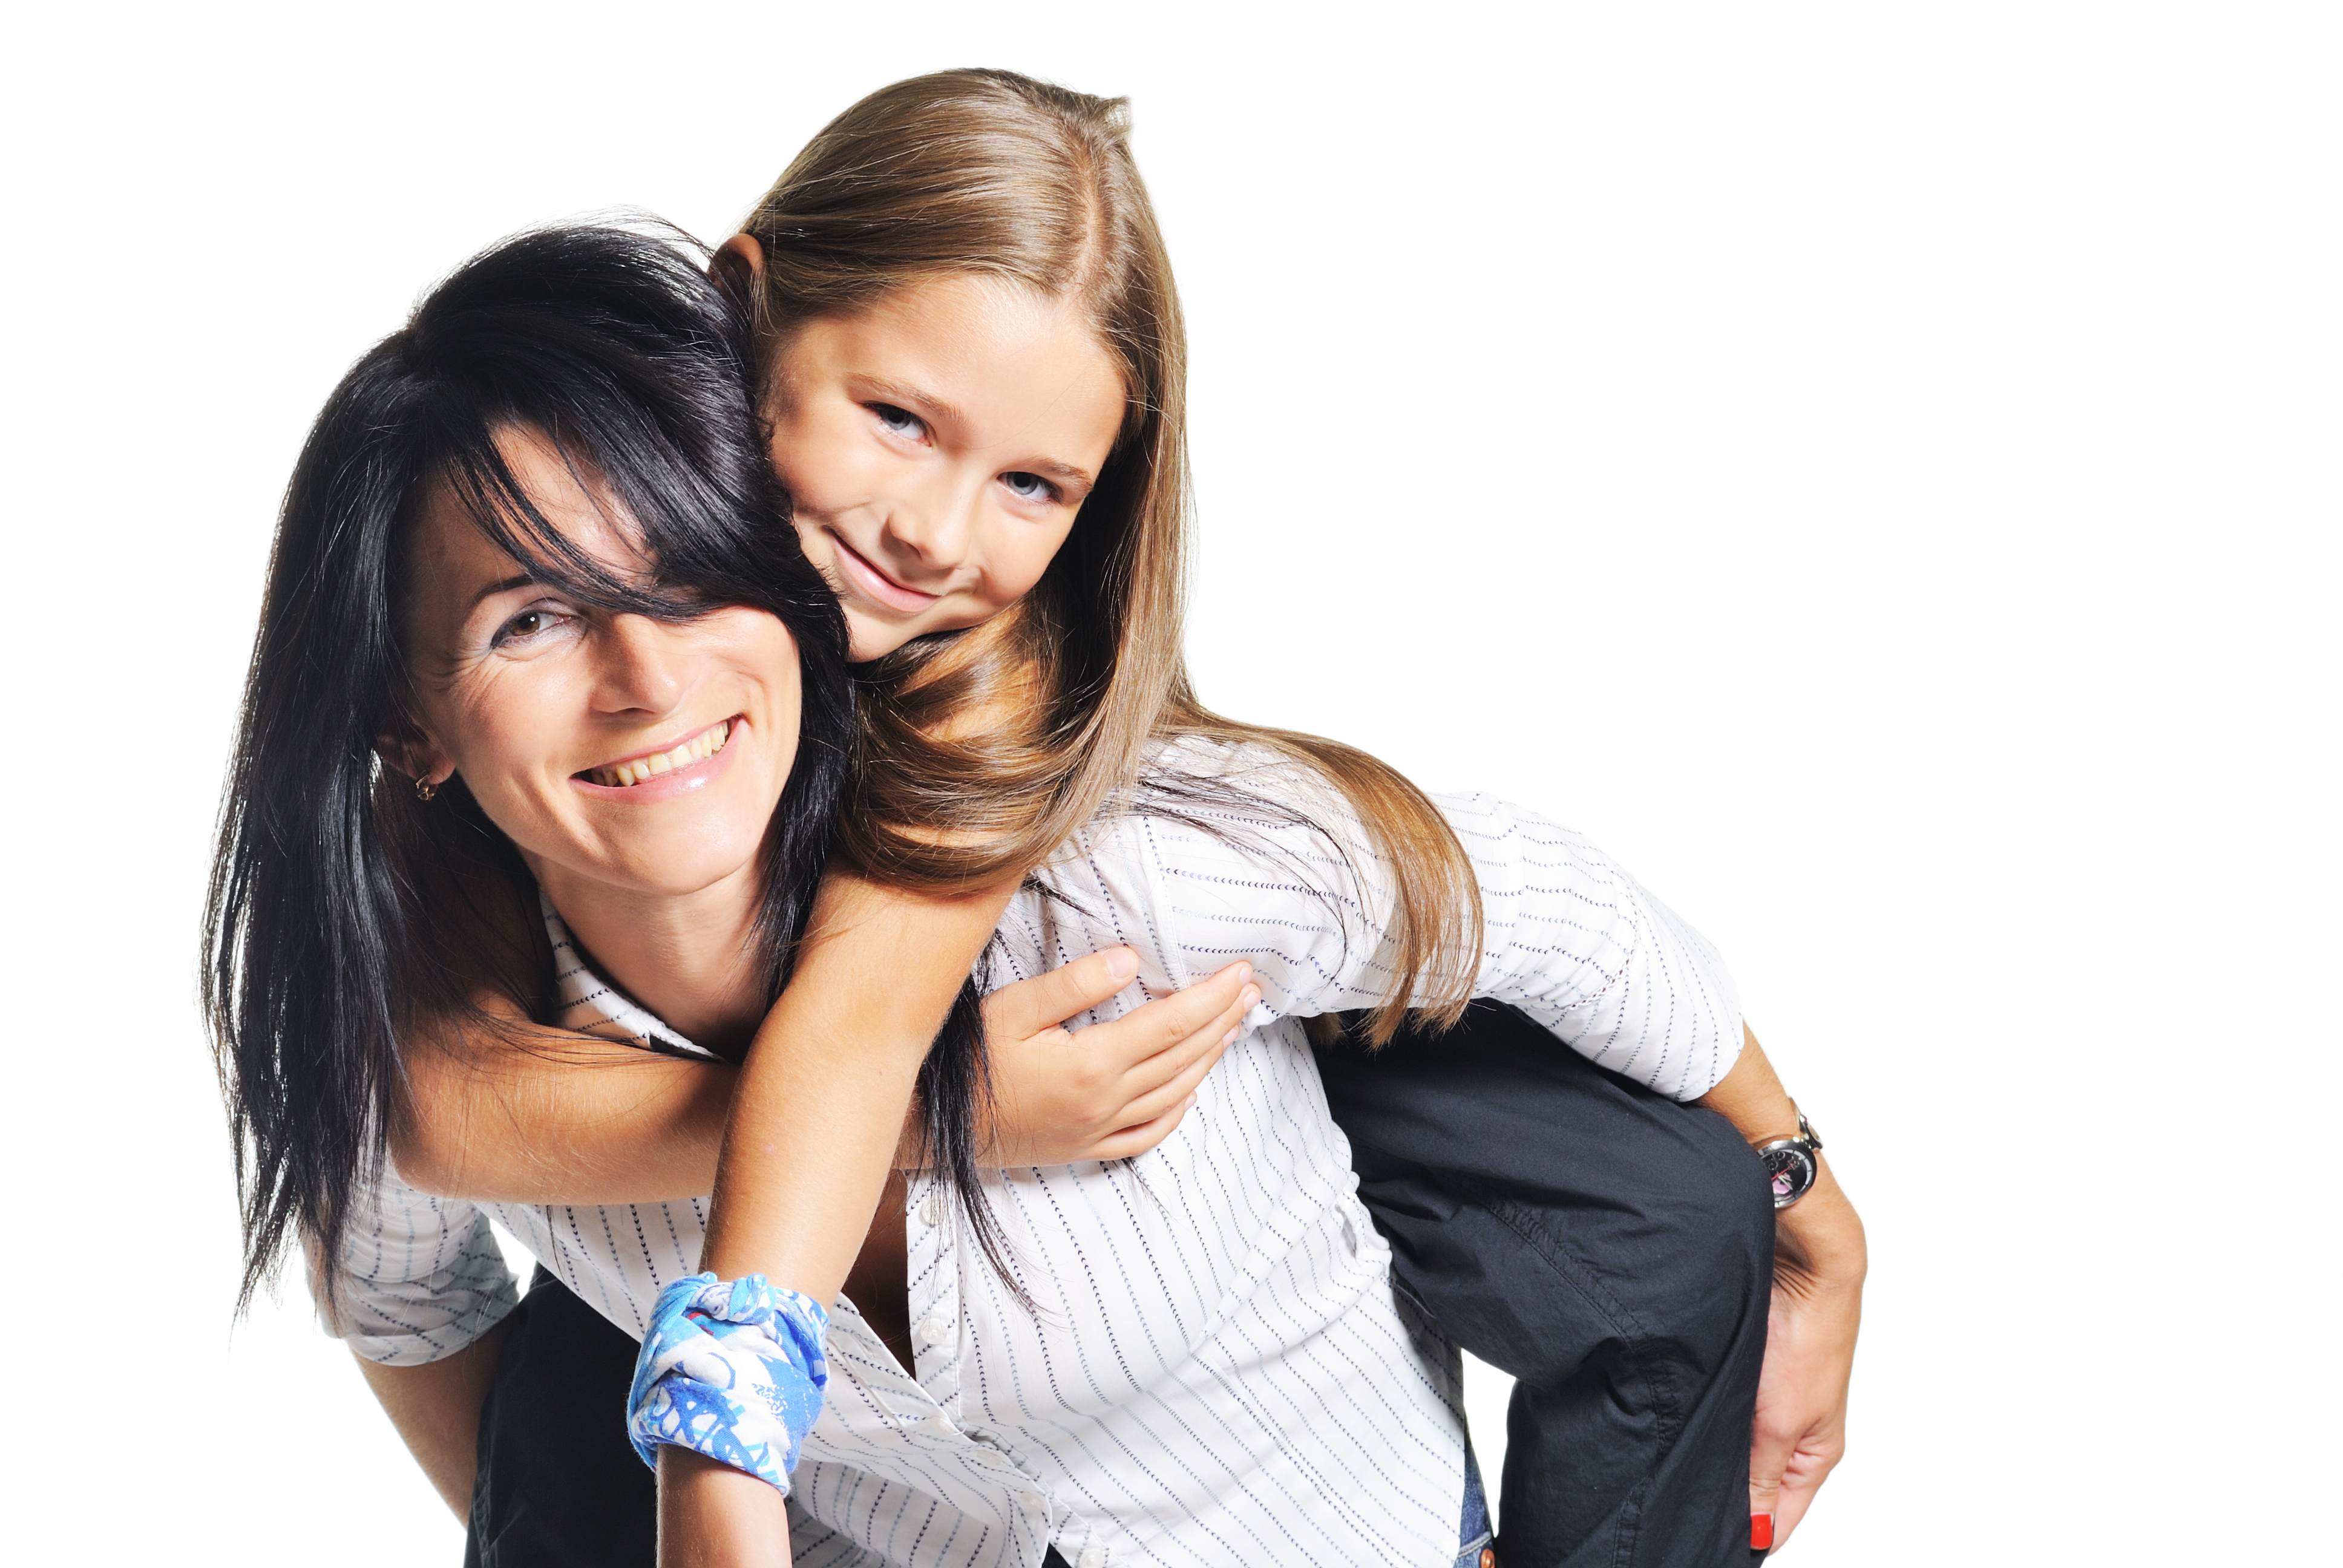 Una mujer y un joven adolescente en su espalda | Fuente: Shuttterstock